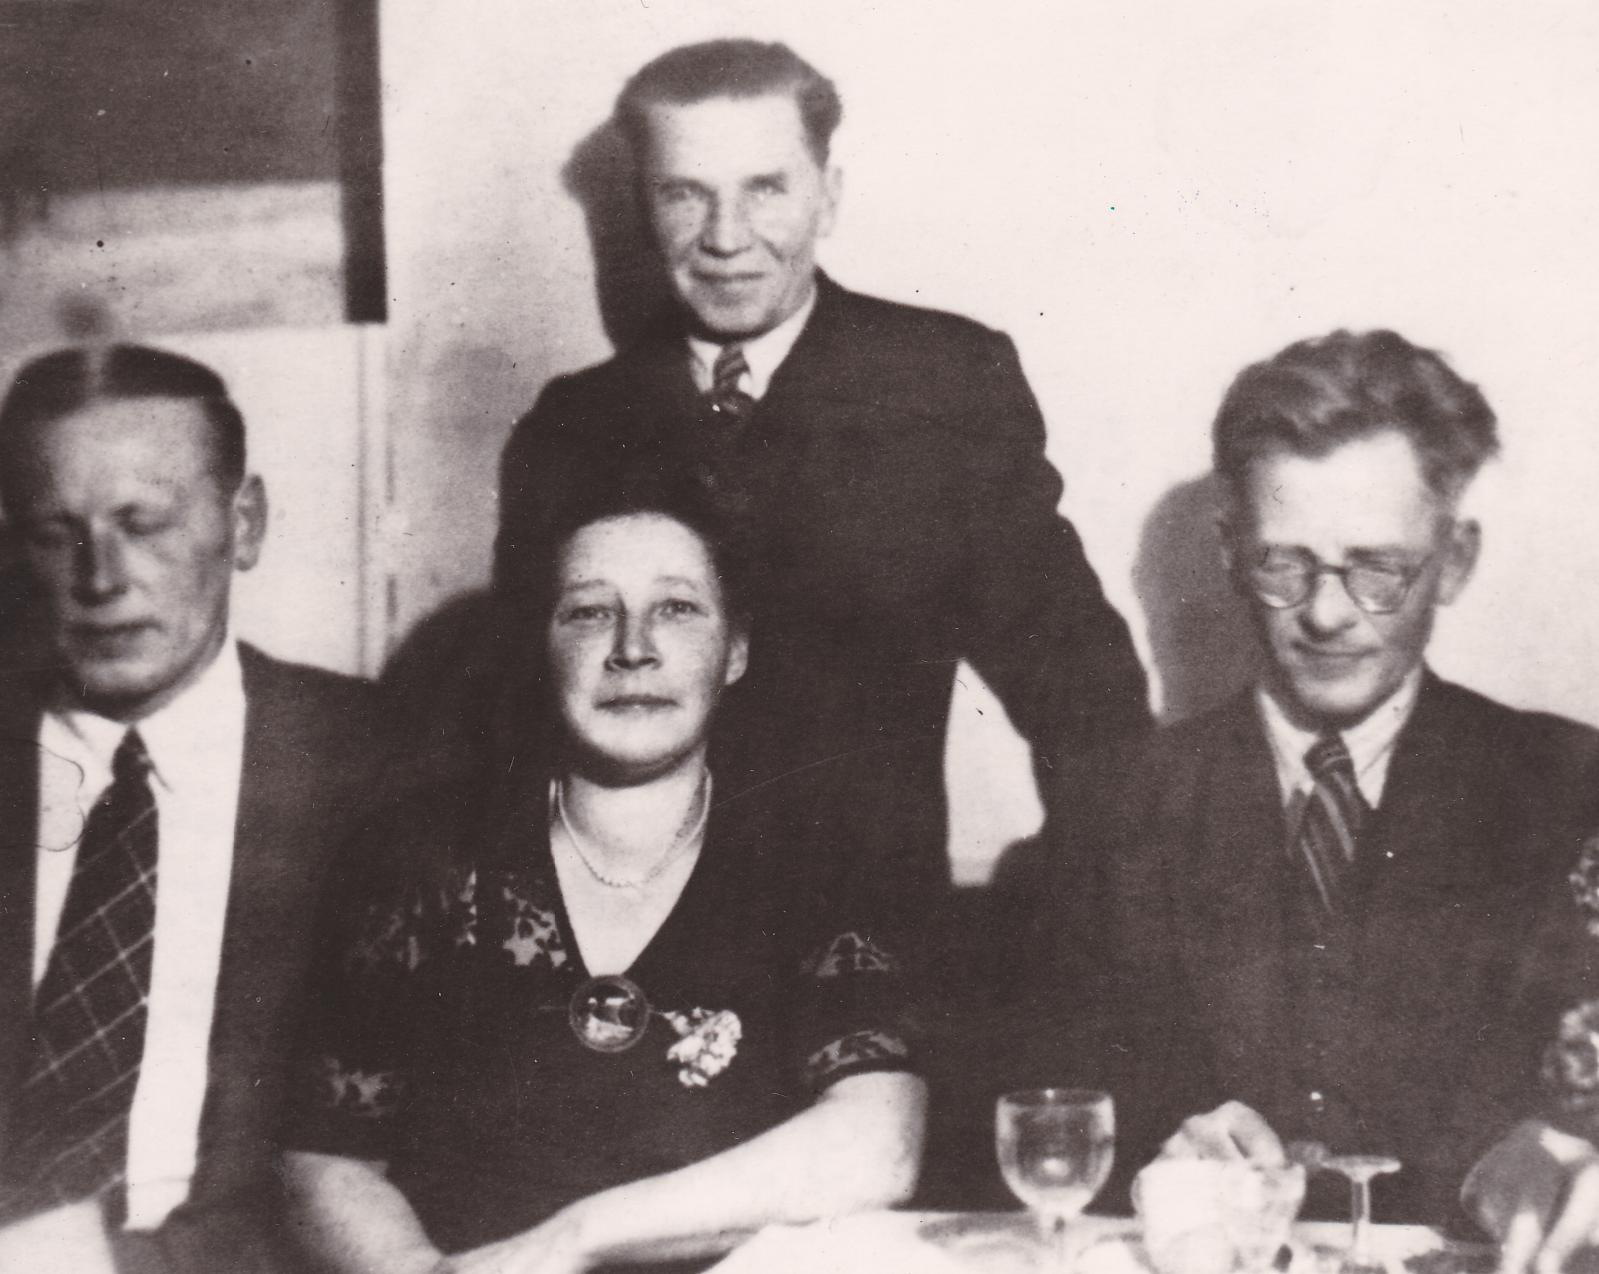 Pariisi eestlaste piduõhtu mardipäeval konservatooriumi saalis 1946. a. Istuvad - Valdur Mõtus, Mari Pehk, Eduard Wiiralt (paremalt esimene)